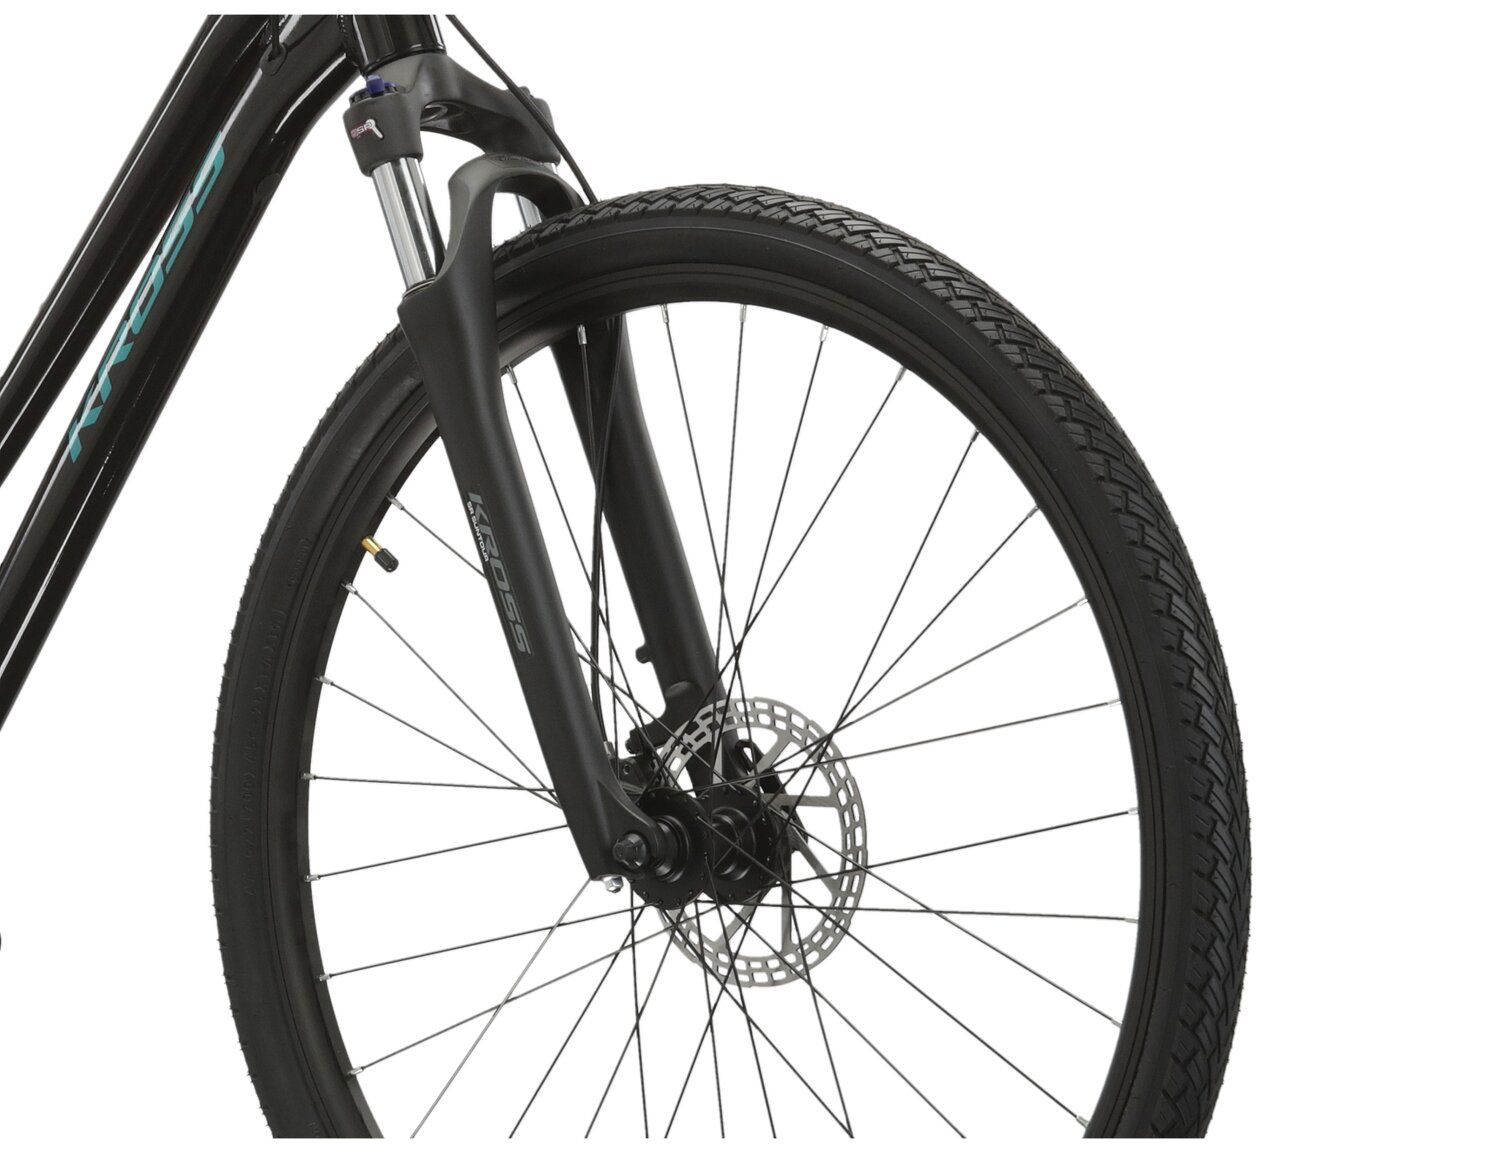 Aluminowa rama, amortyzowany widelec SR SUNTOUR NEX HLO oraz opony Wanda w rowerze crossowym damskim KROSS Evado 5.0 